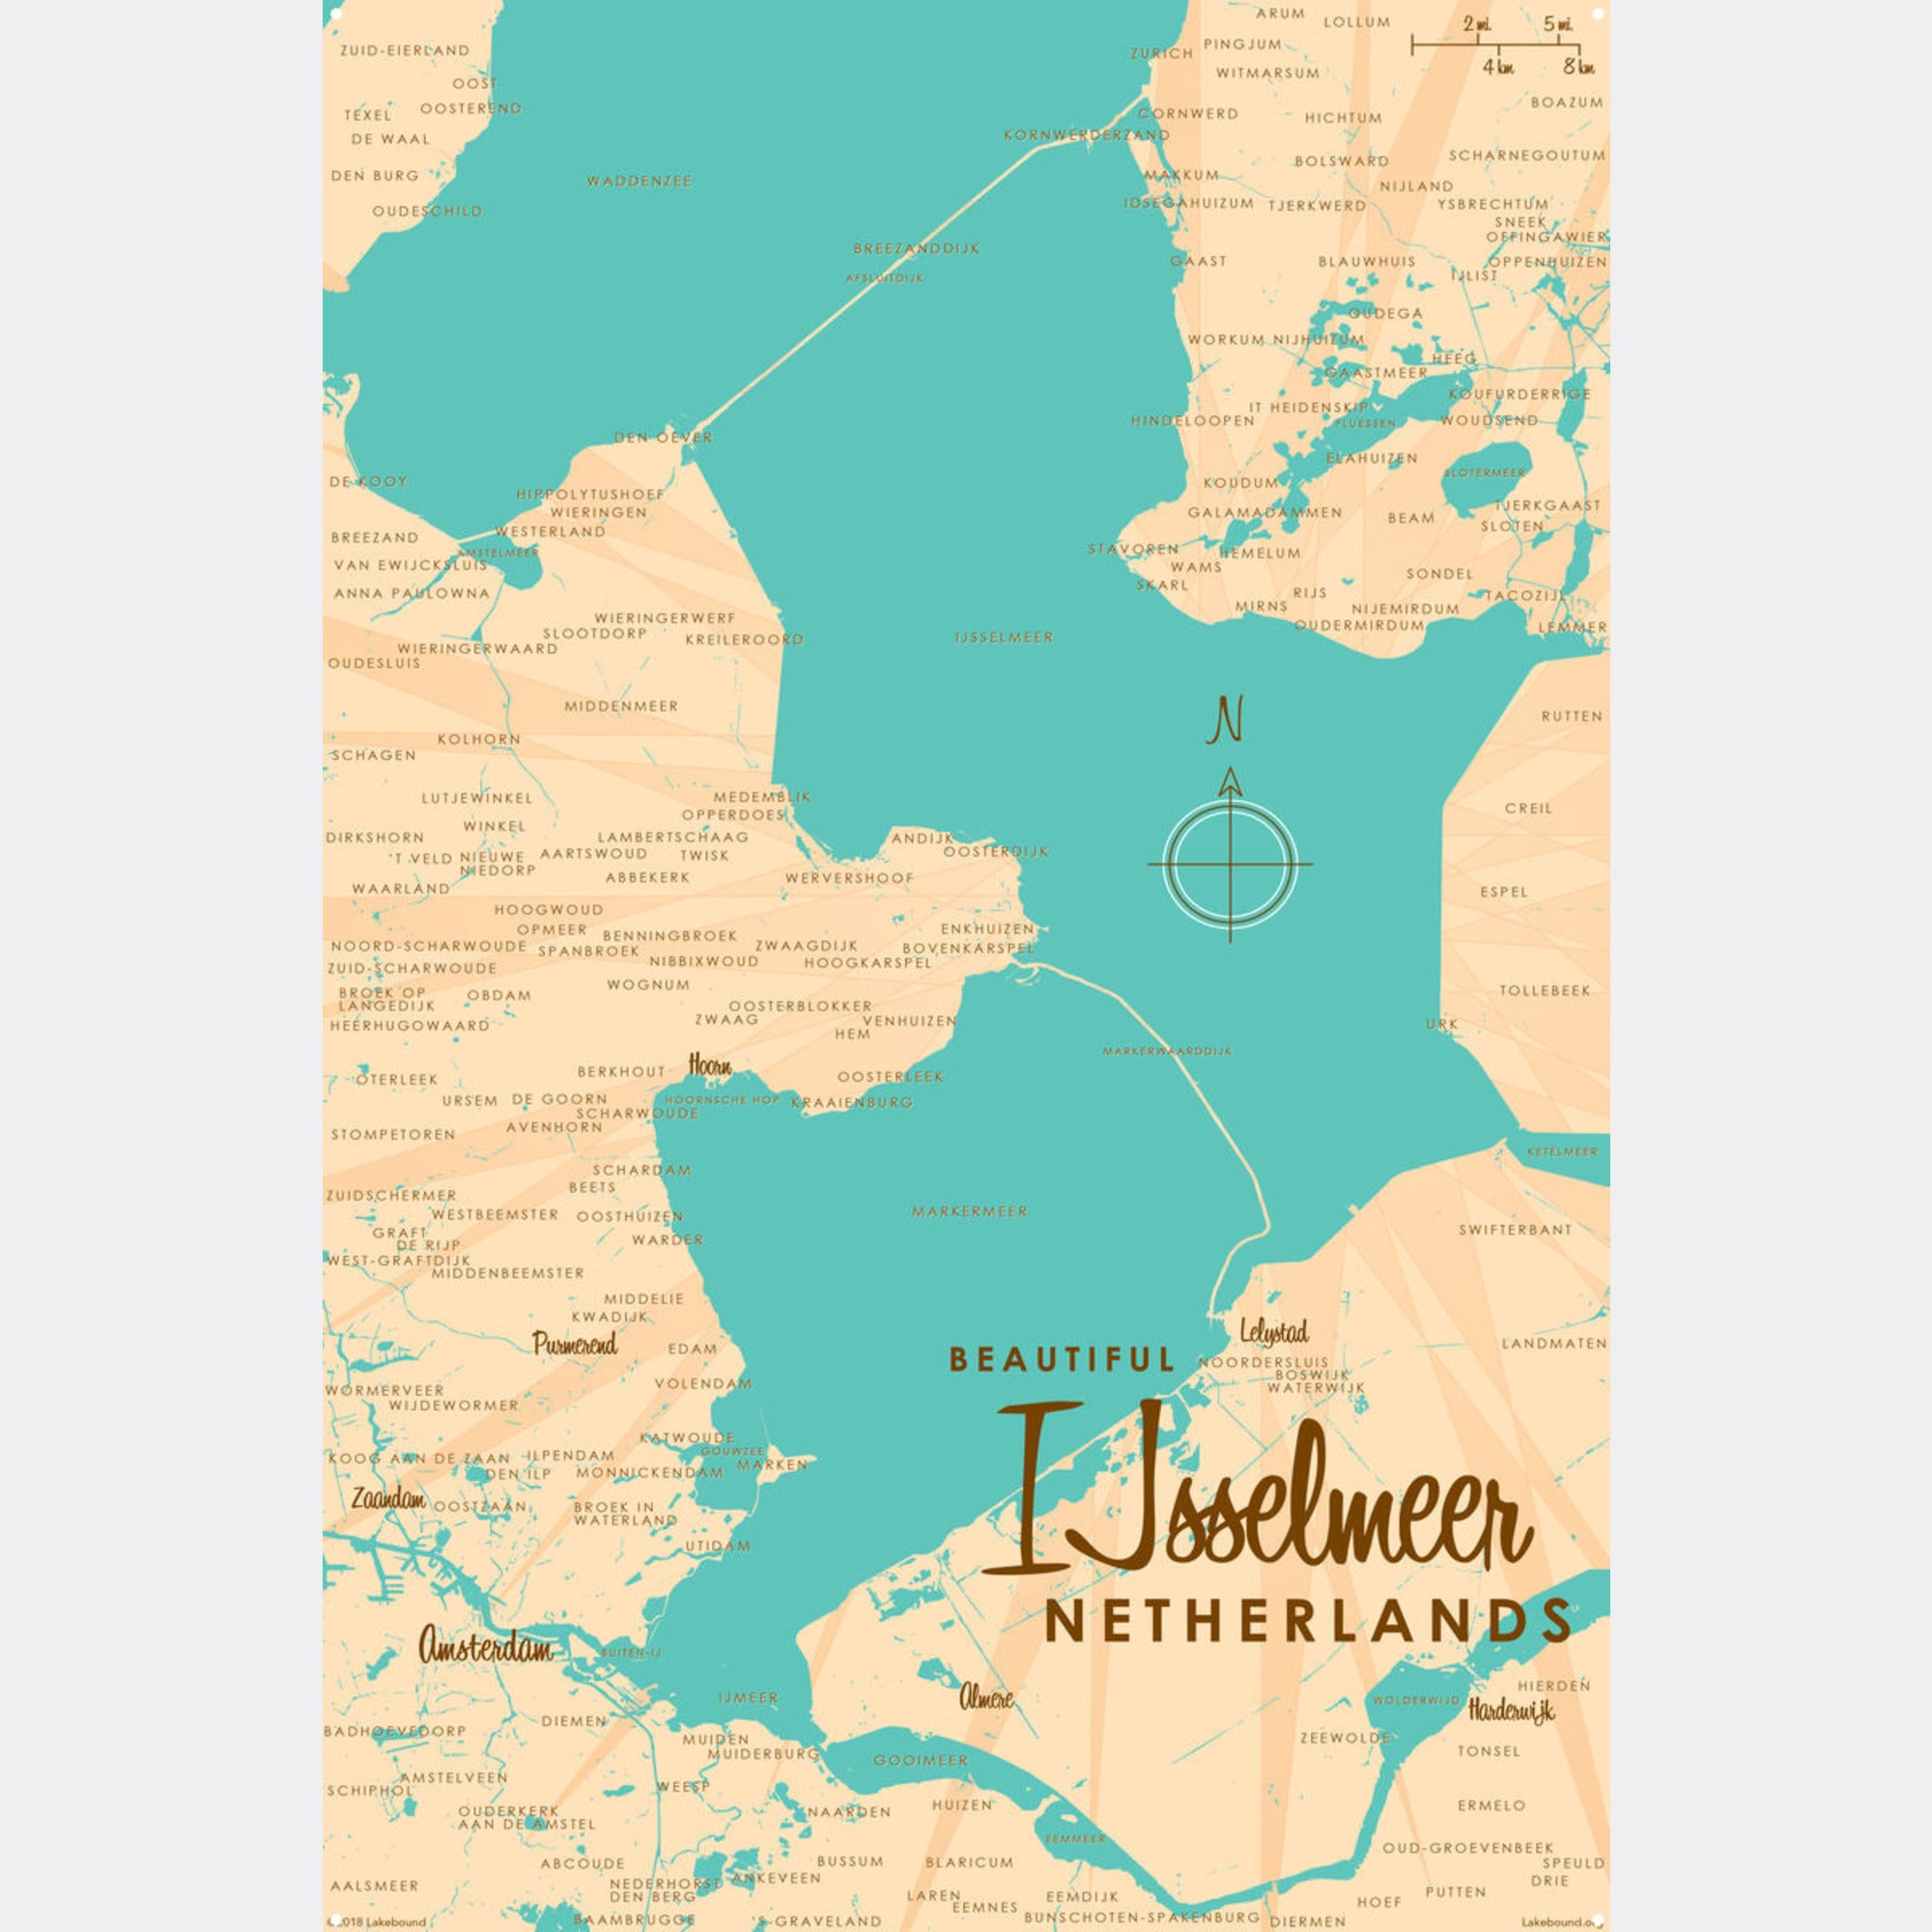 IJsselmeer Netherlands, Metal Sign Map Art